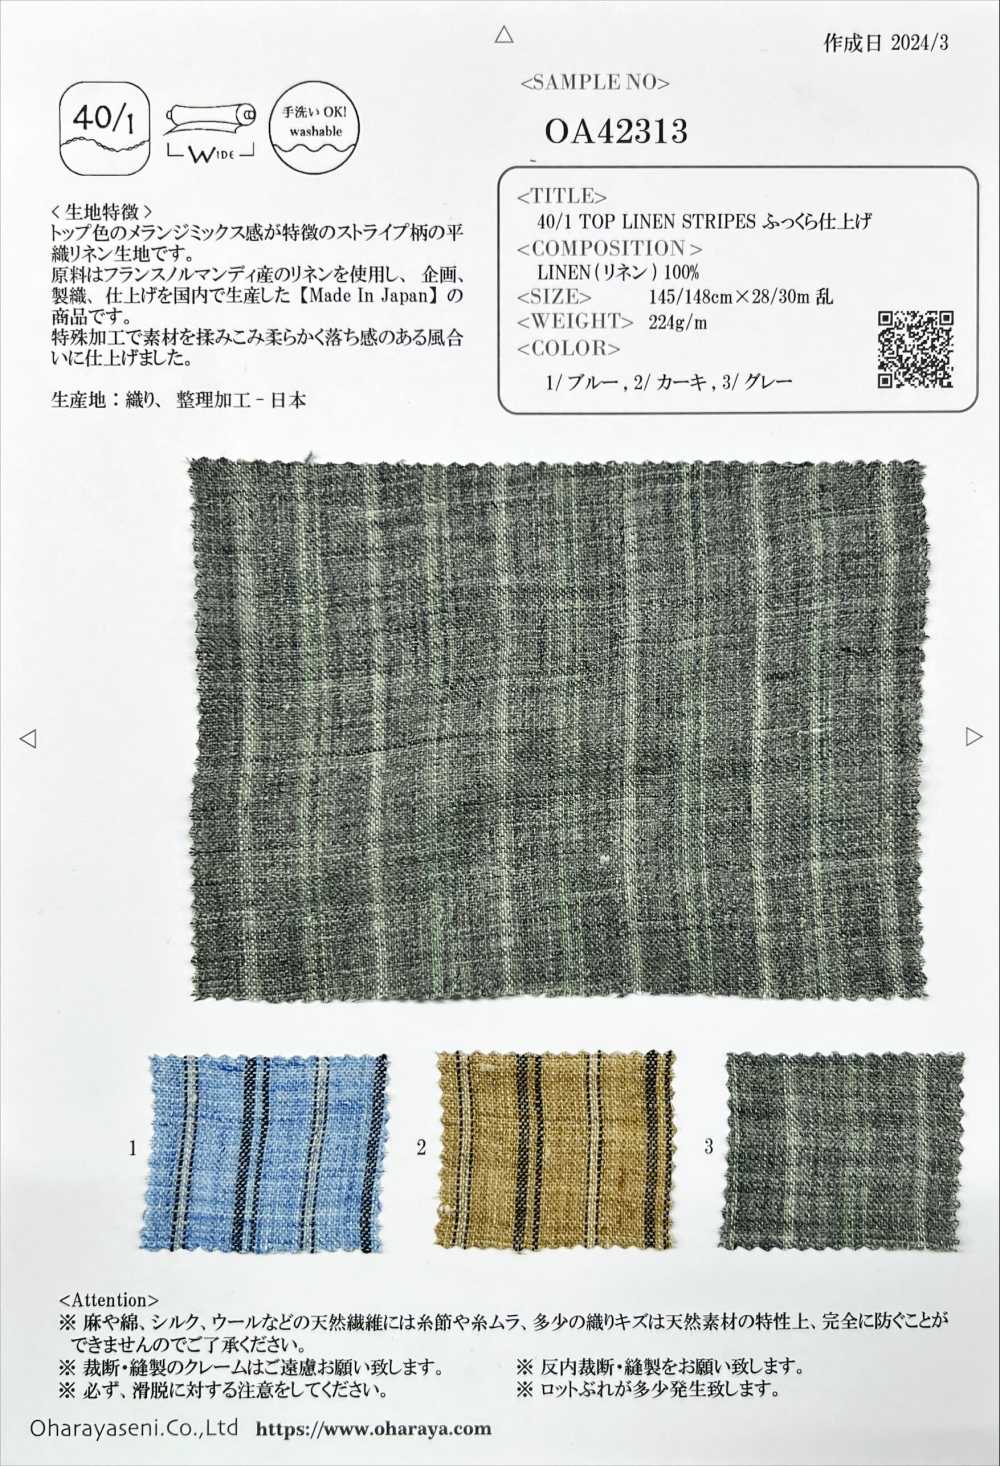 OA42313 TOP 40/1 LISTRAS DE LINHO Acabamento Fofo[Têxtil / Tecido] Oharayaseni